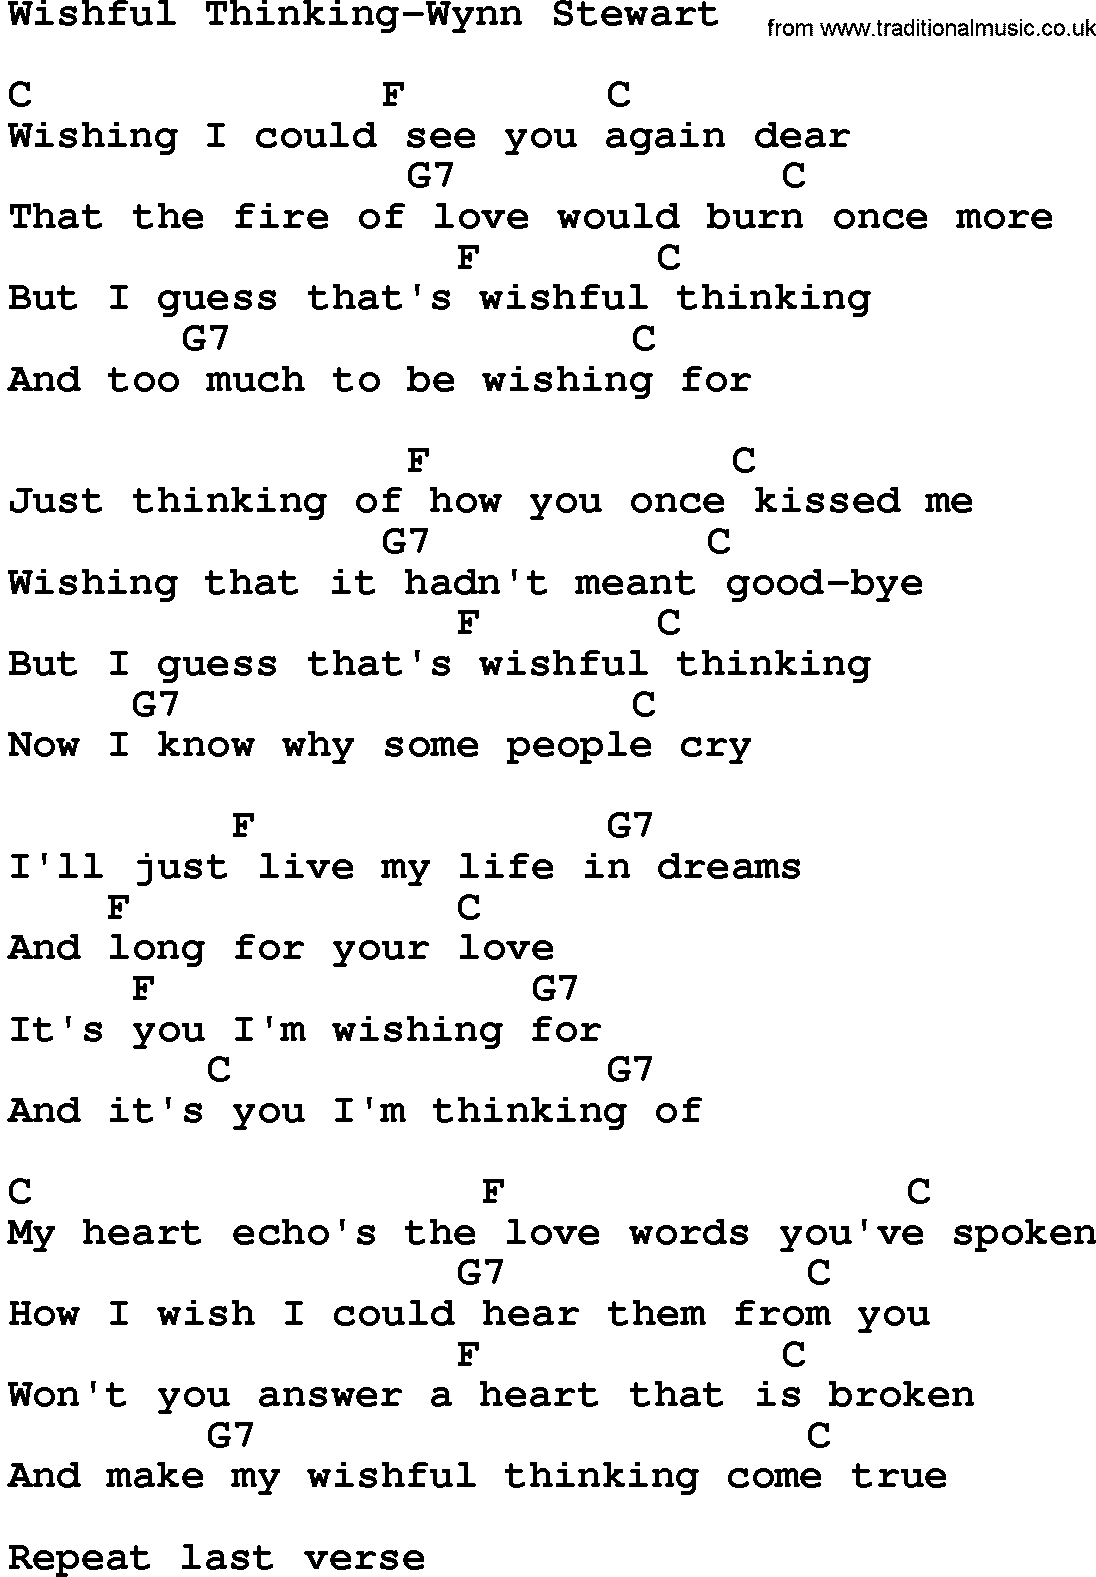 Country music song: Wishful Thinking-Wynn Stewart lyrics and chords